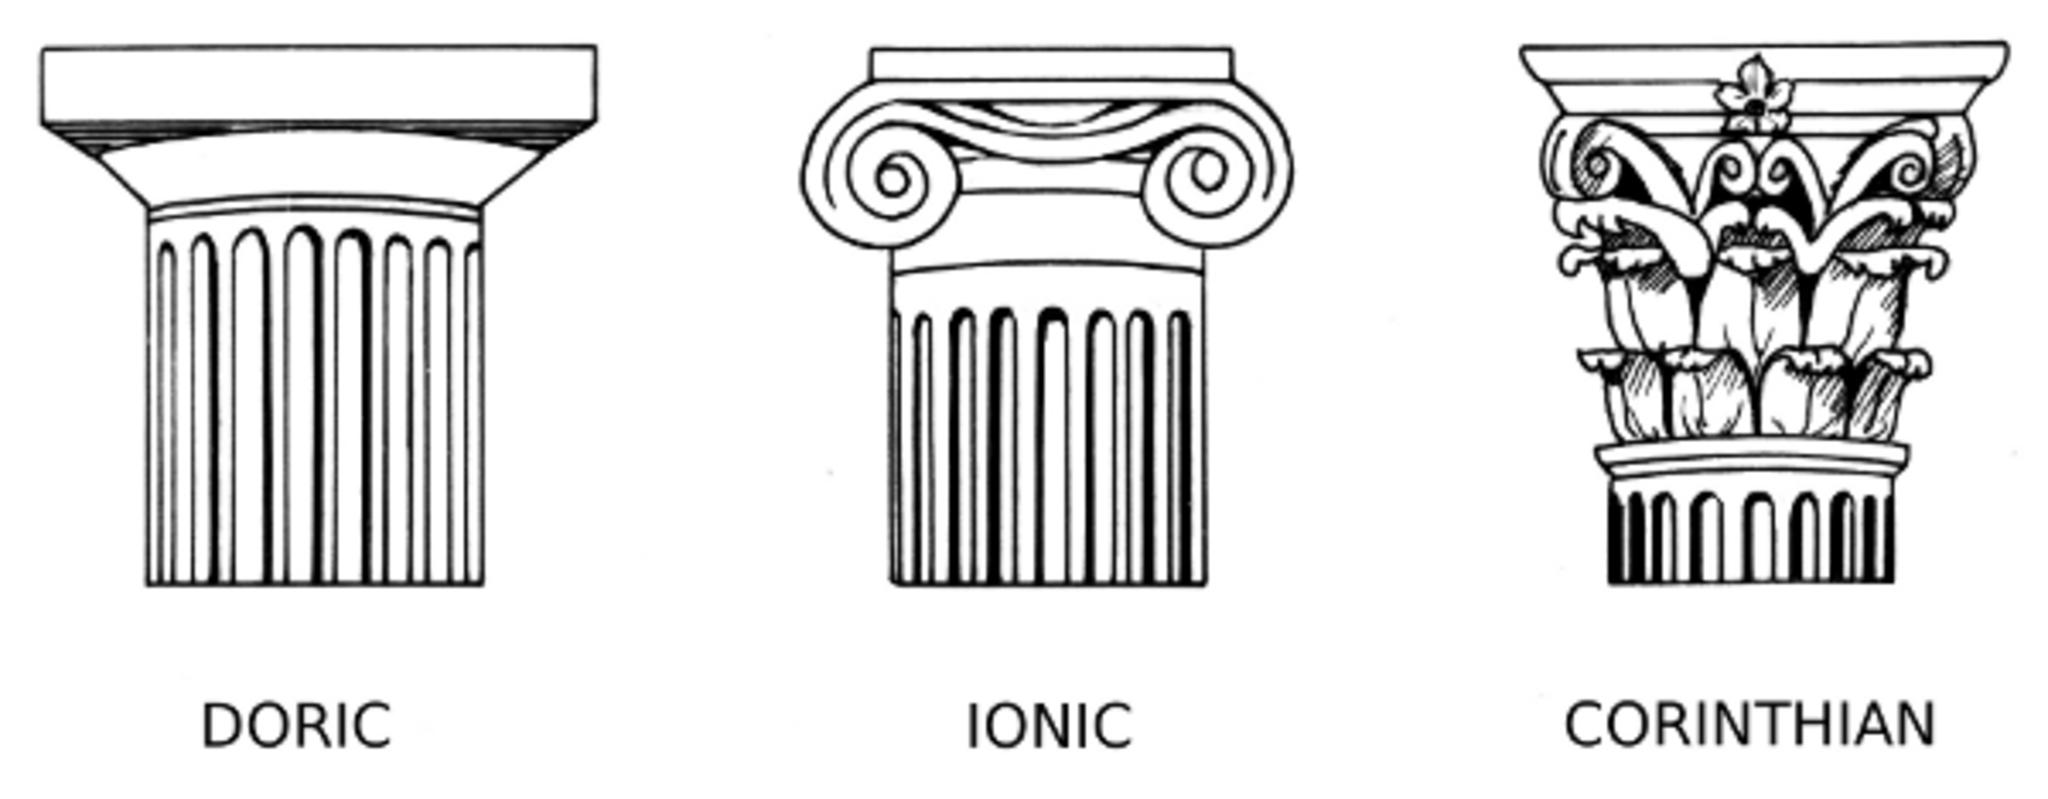 Греческие ордера дорический ионический Коринфский